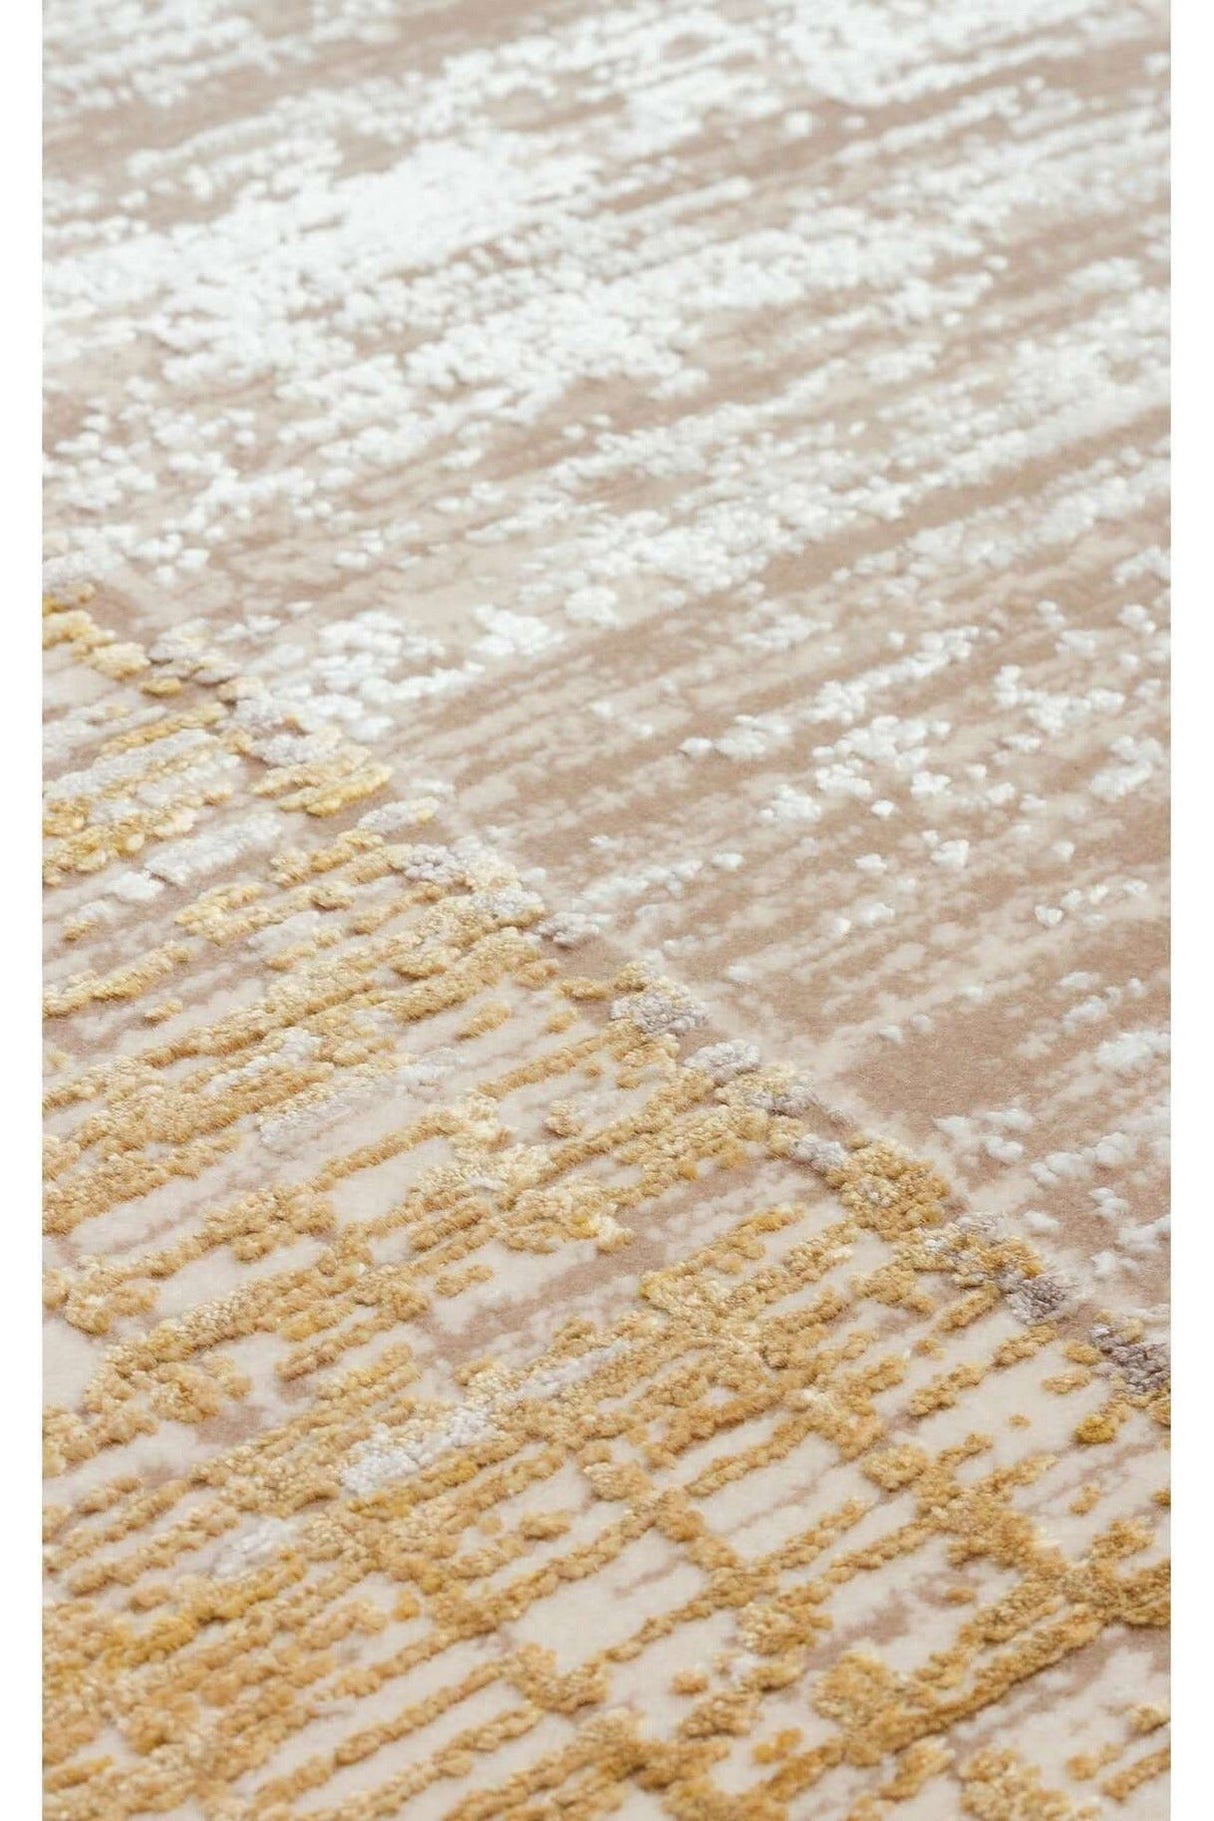 #Turkish_Carpets_Rugs# #Modern_Carpets# #Abrash_Carpets#Fsd 02 Beige Gold